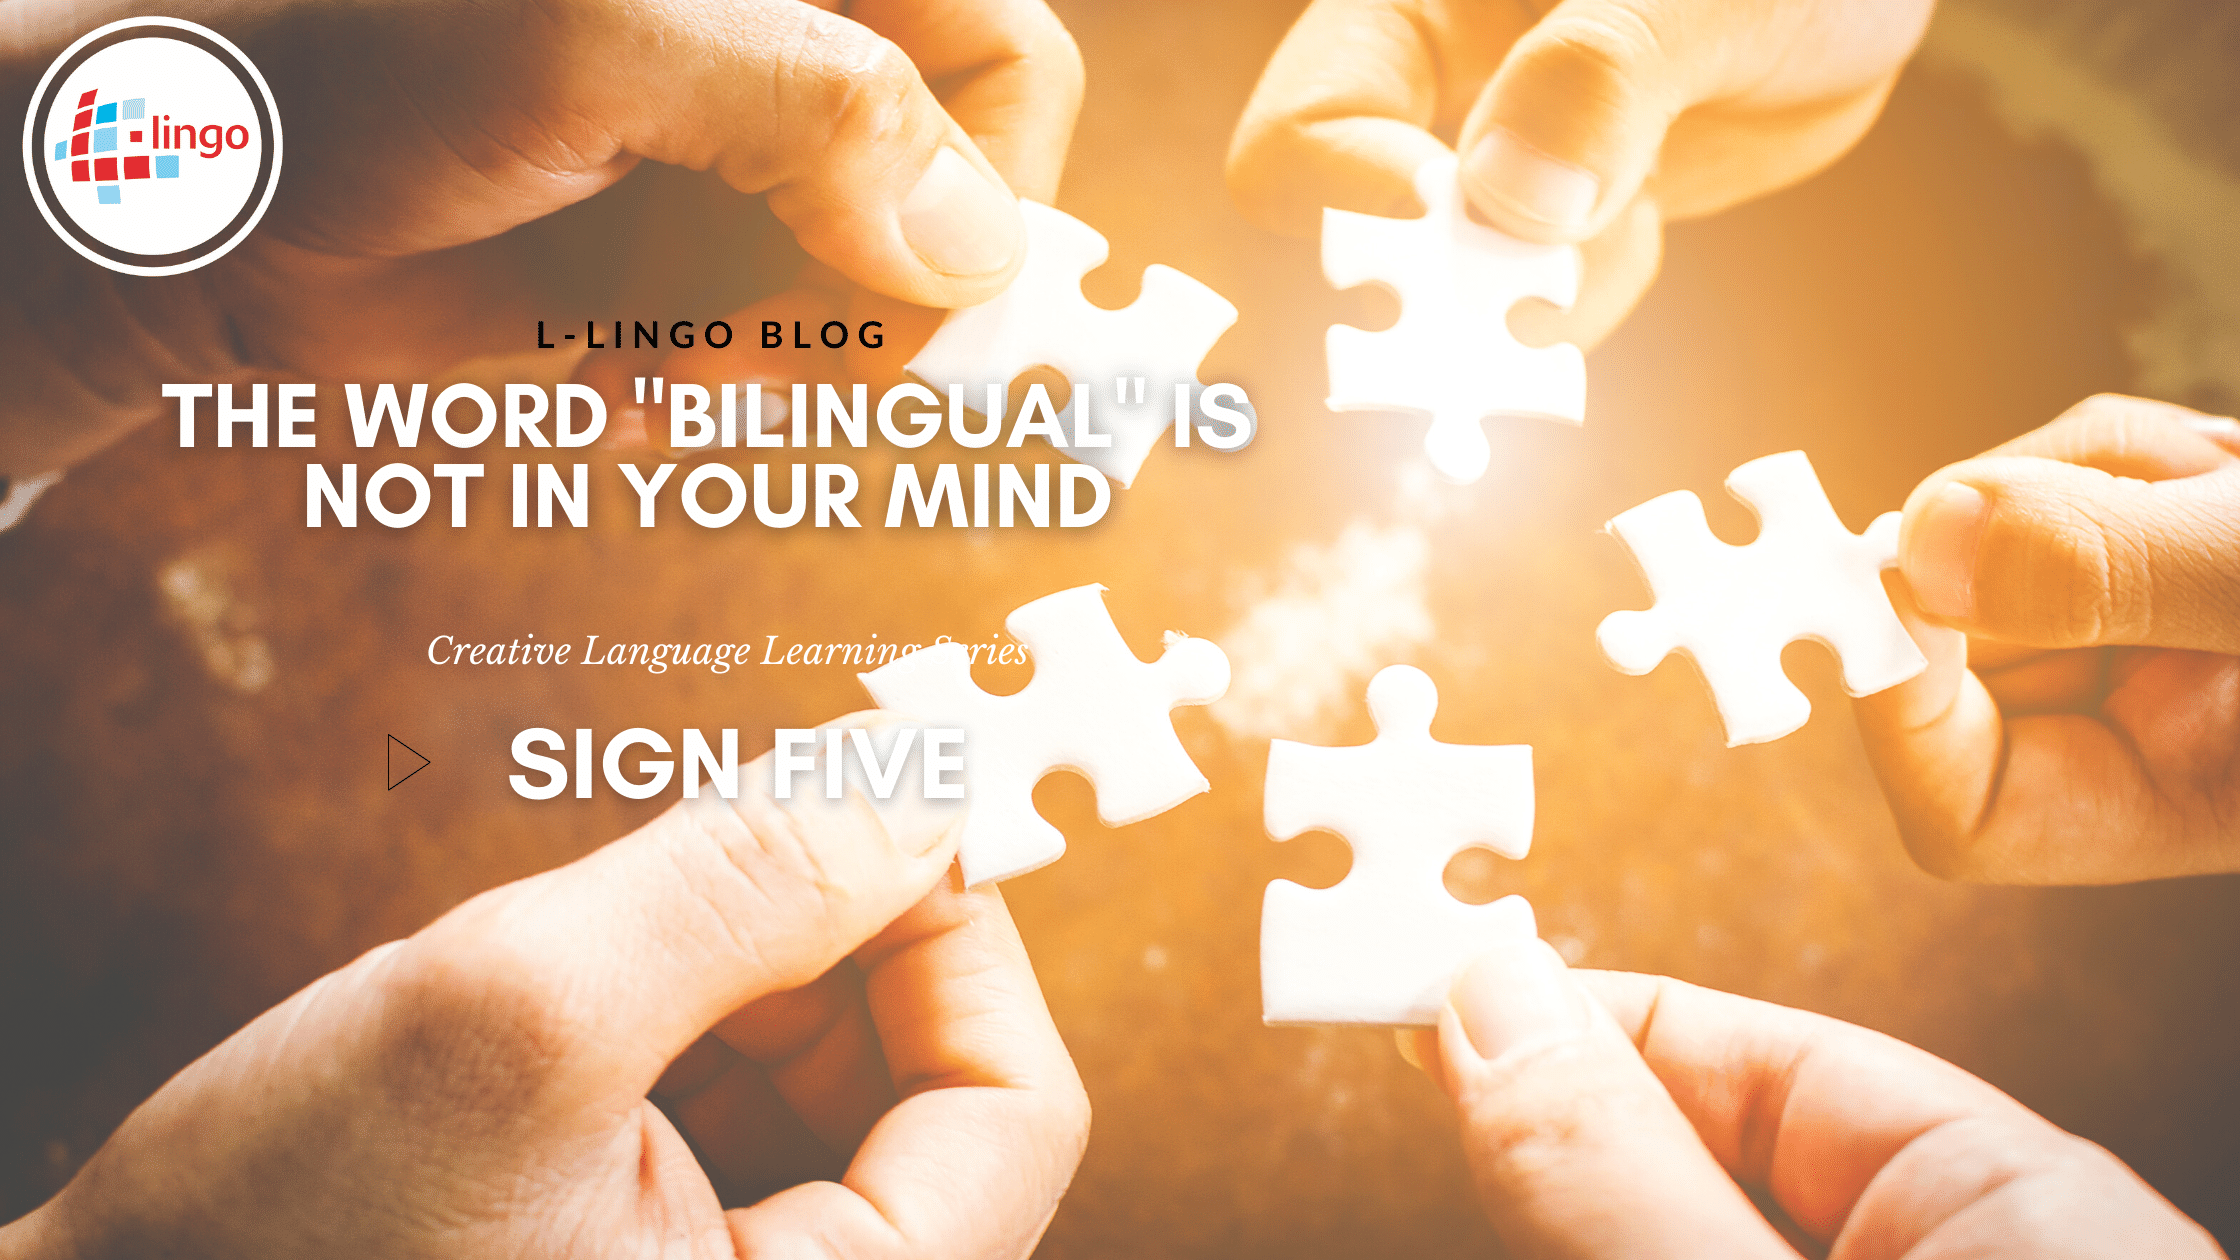 5 Signs of Bilingualism L-Lingo Blog